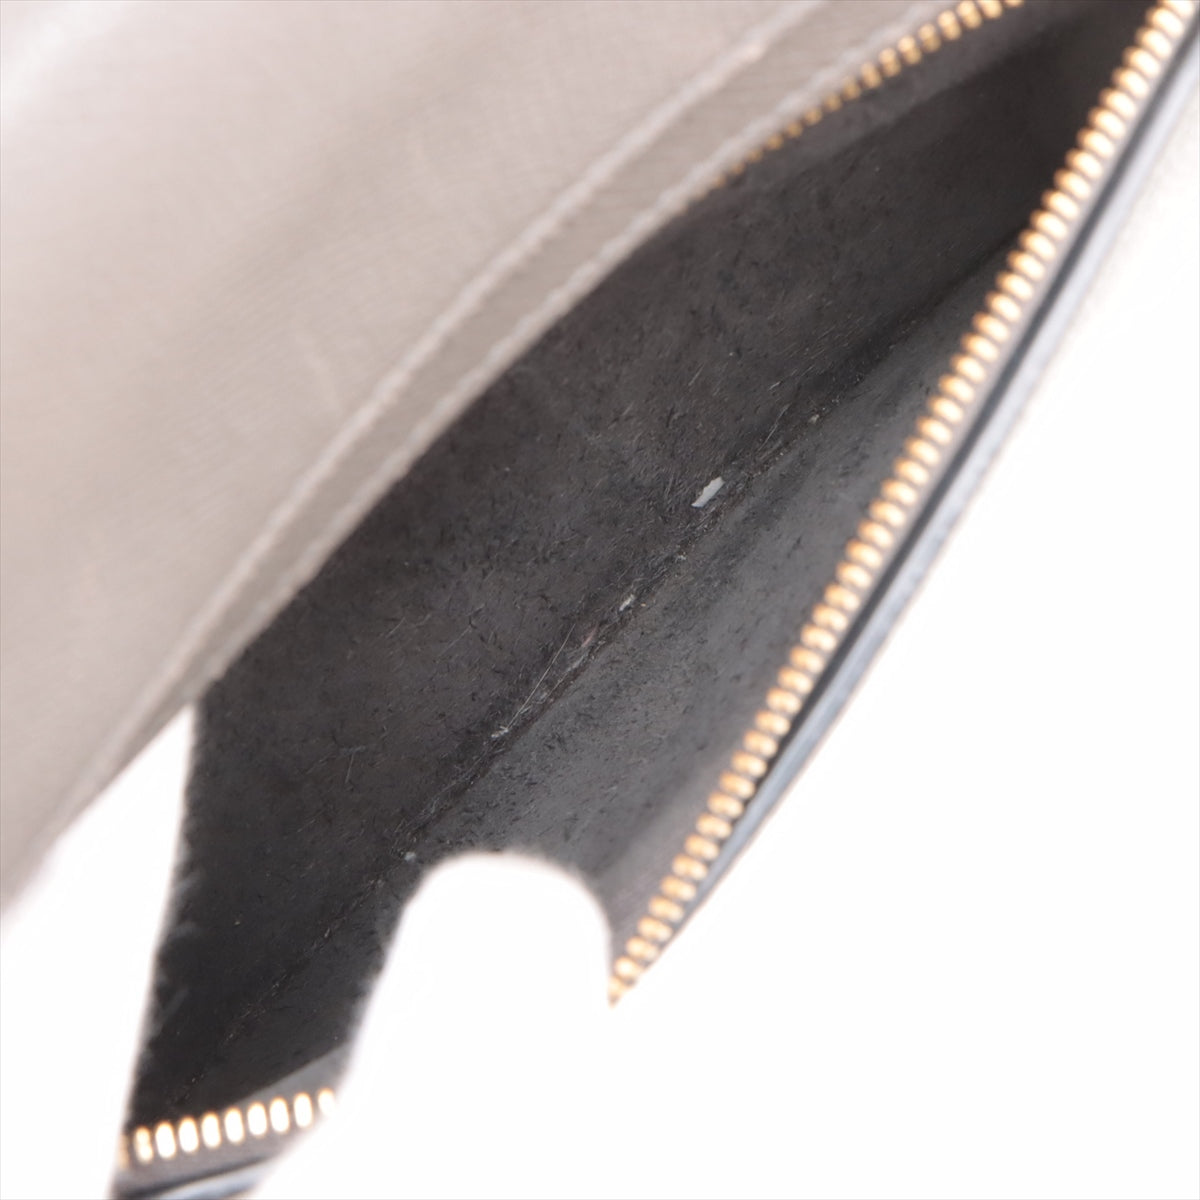 Celine Belt Bag Mini Leather 2WAY Handbag Gr Fence